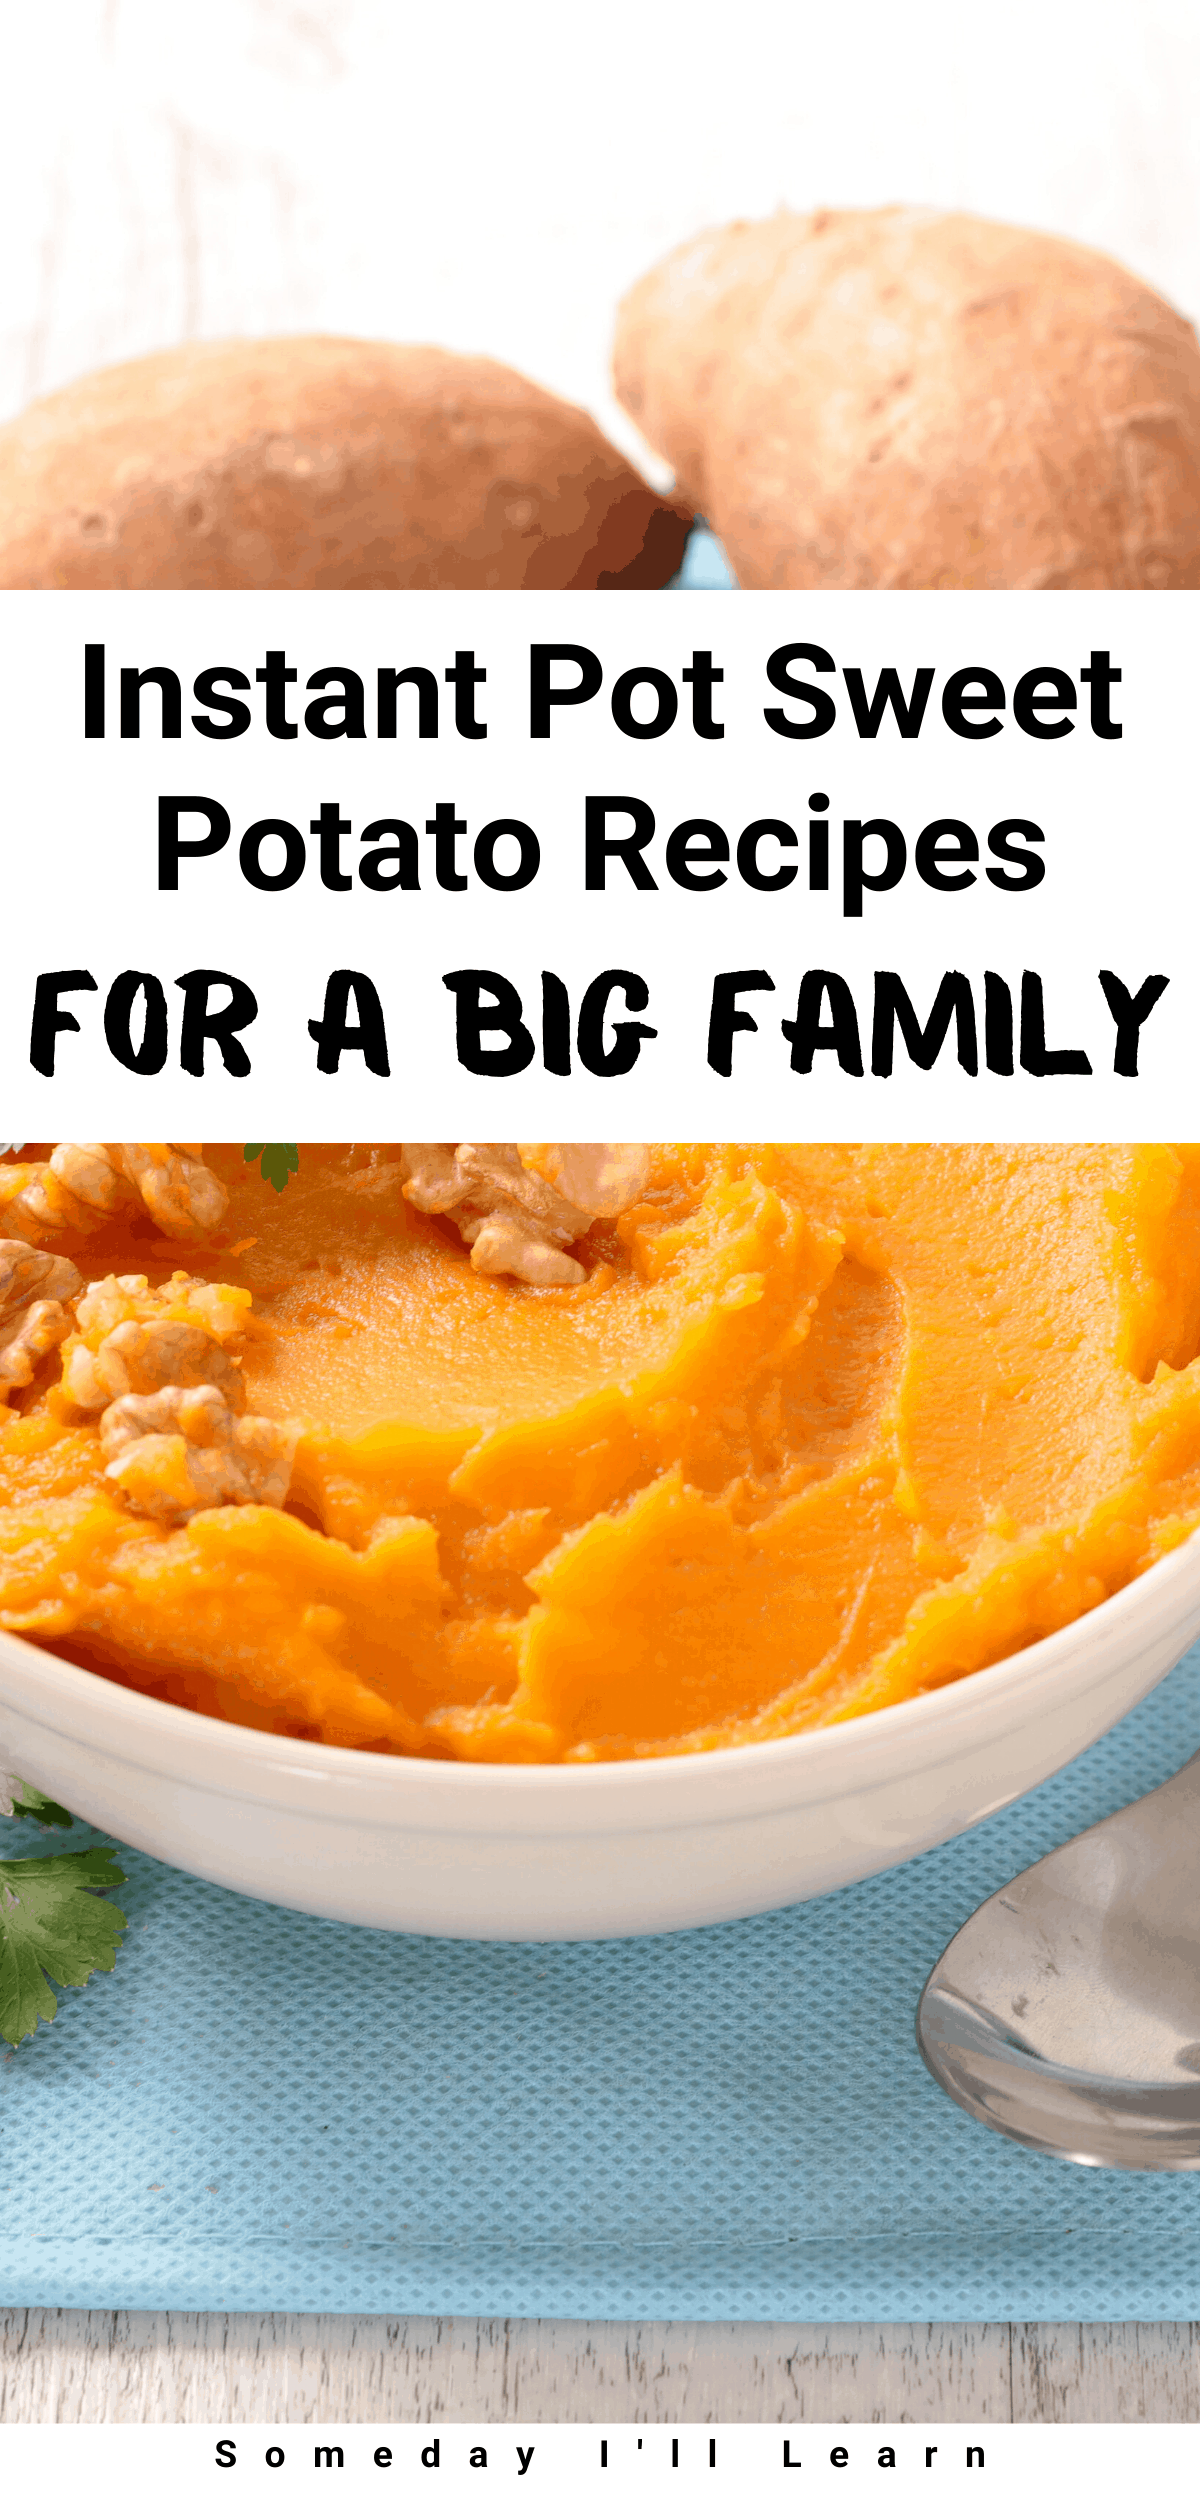 Instant pot sweet potato recipes